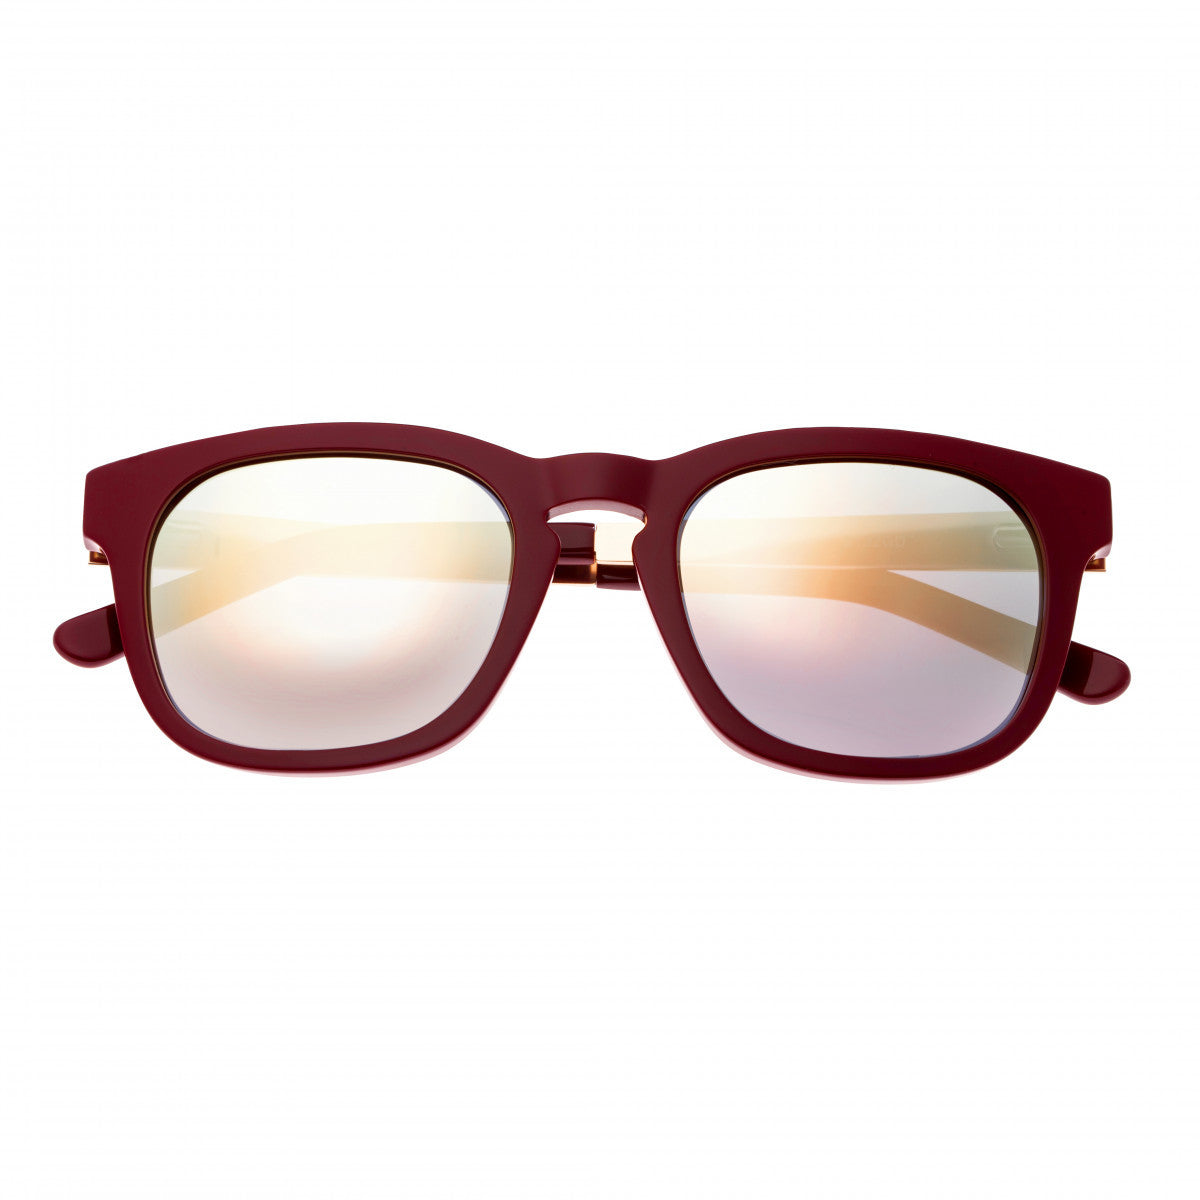 Sixty One Twinbow Polarized Sunglasses - Burgundy/Gold - SIXS132GD